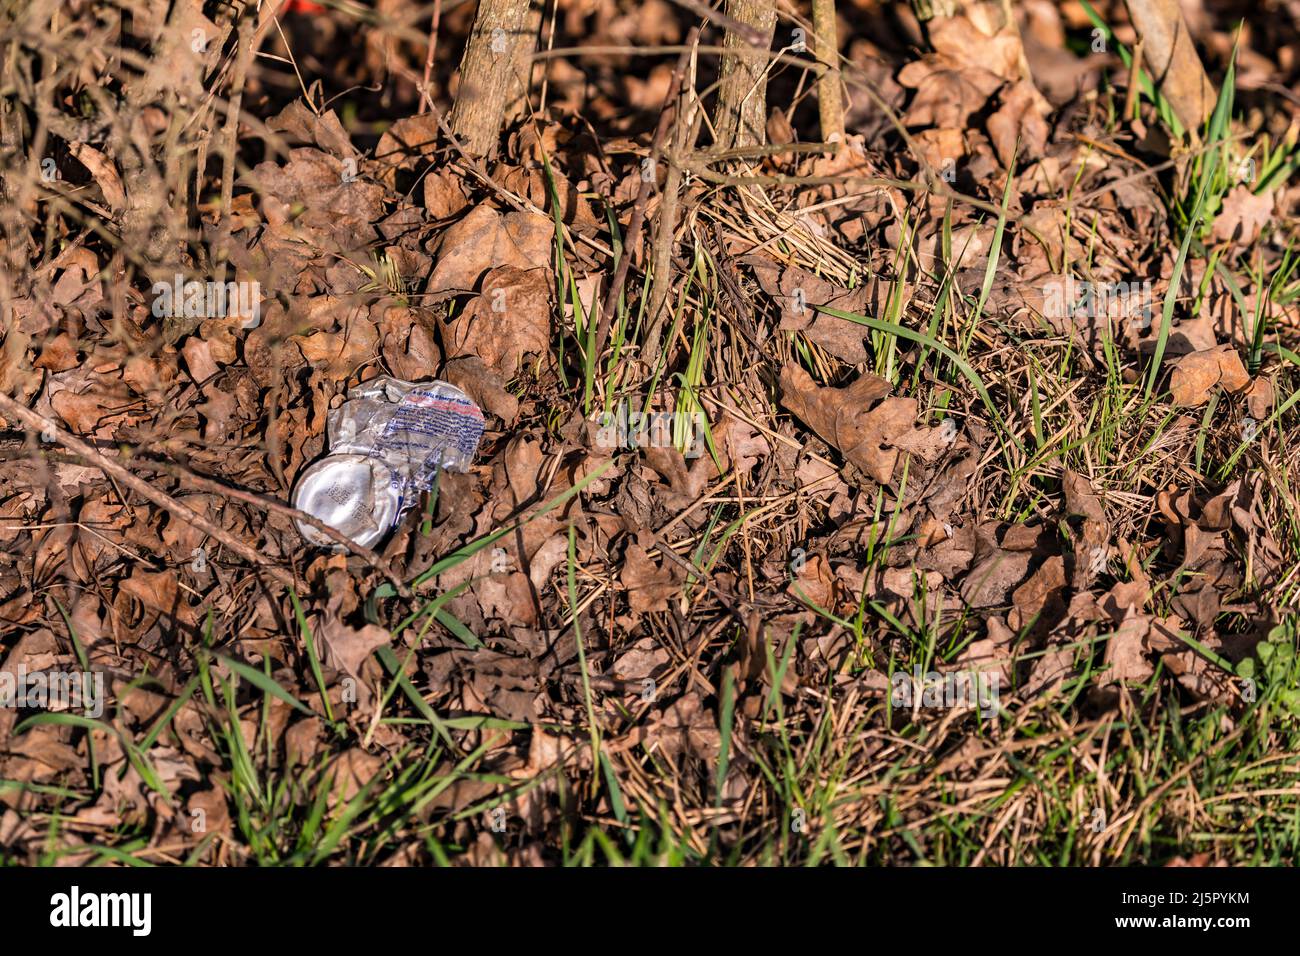 Hay mucha basura desechada en los prados, campos y bosques Foto de stock